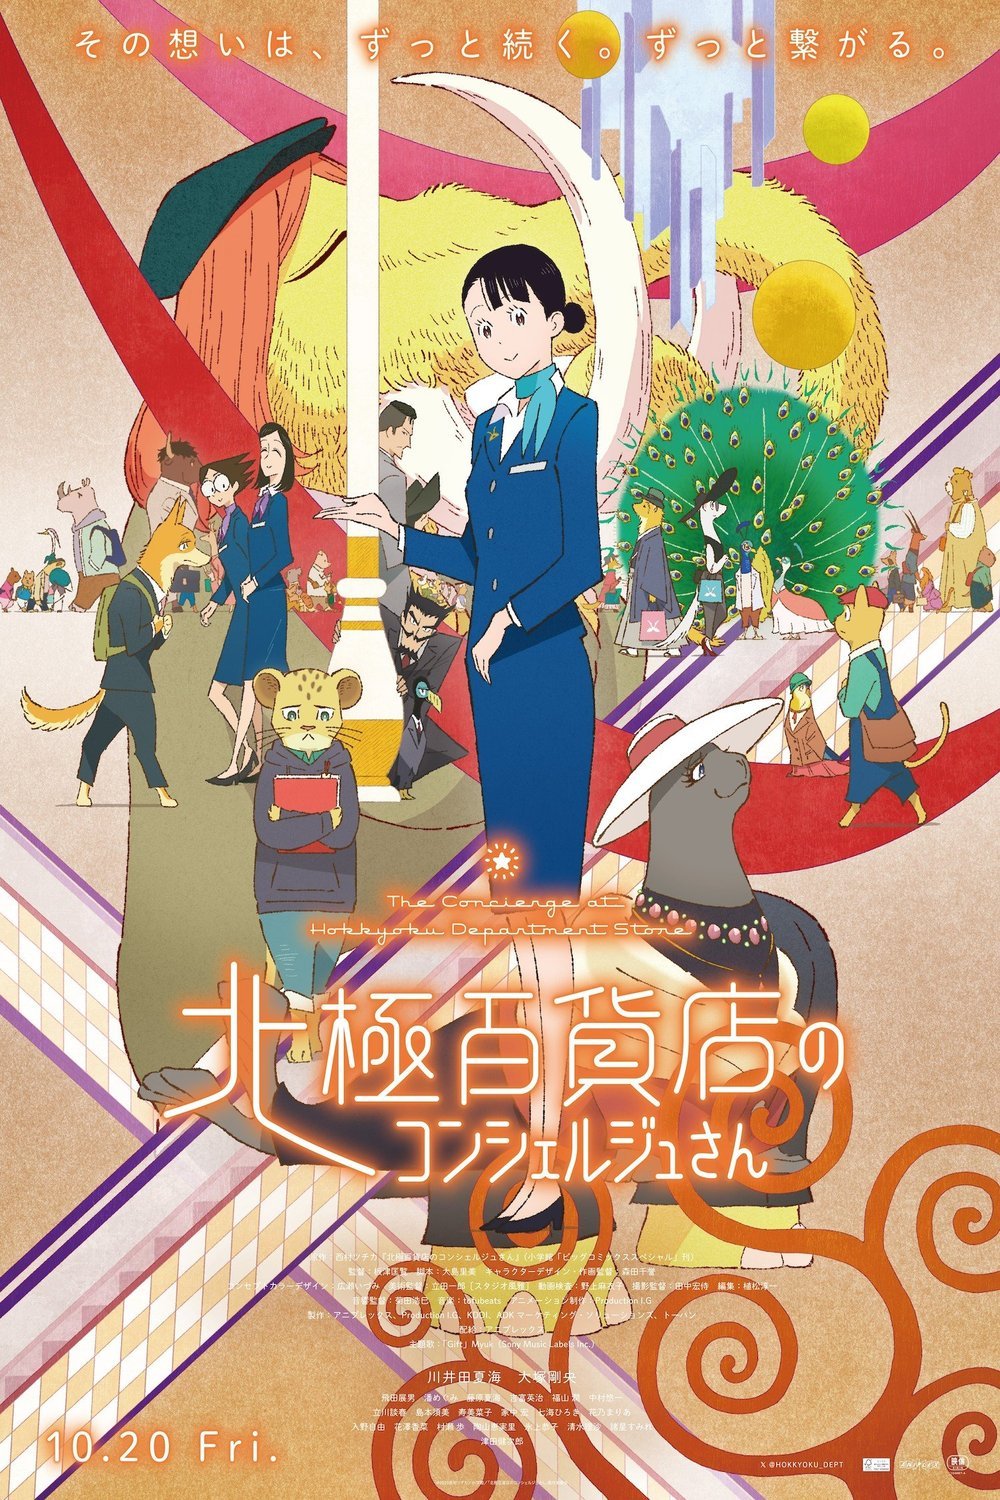 L'affiche originale du film The Concierge at Hokkyoku Department Store en japonais